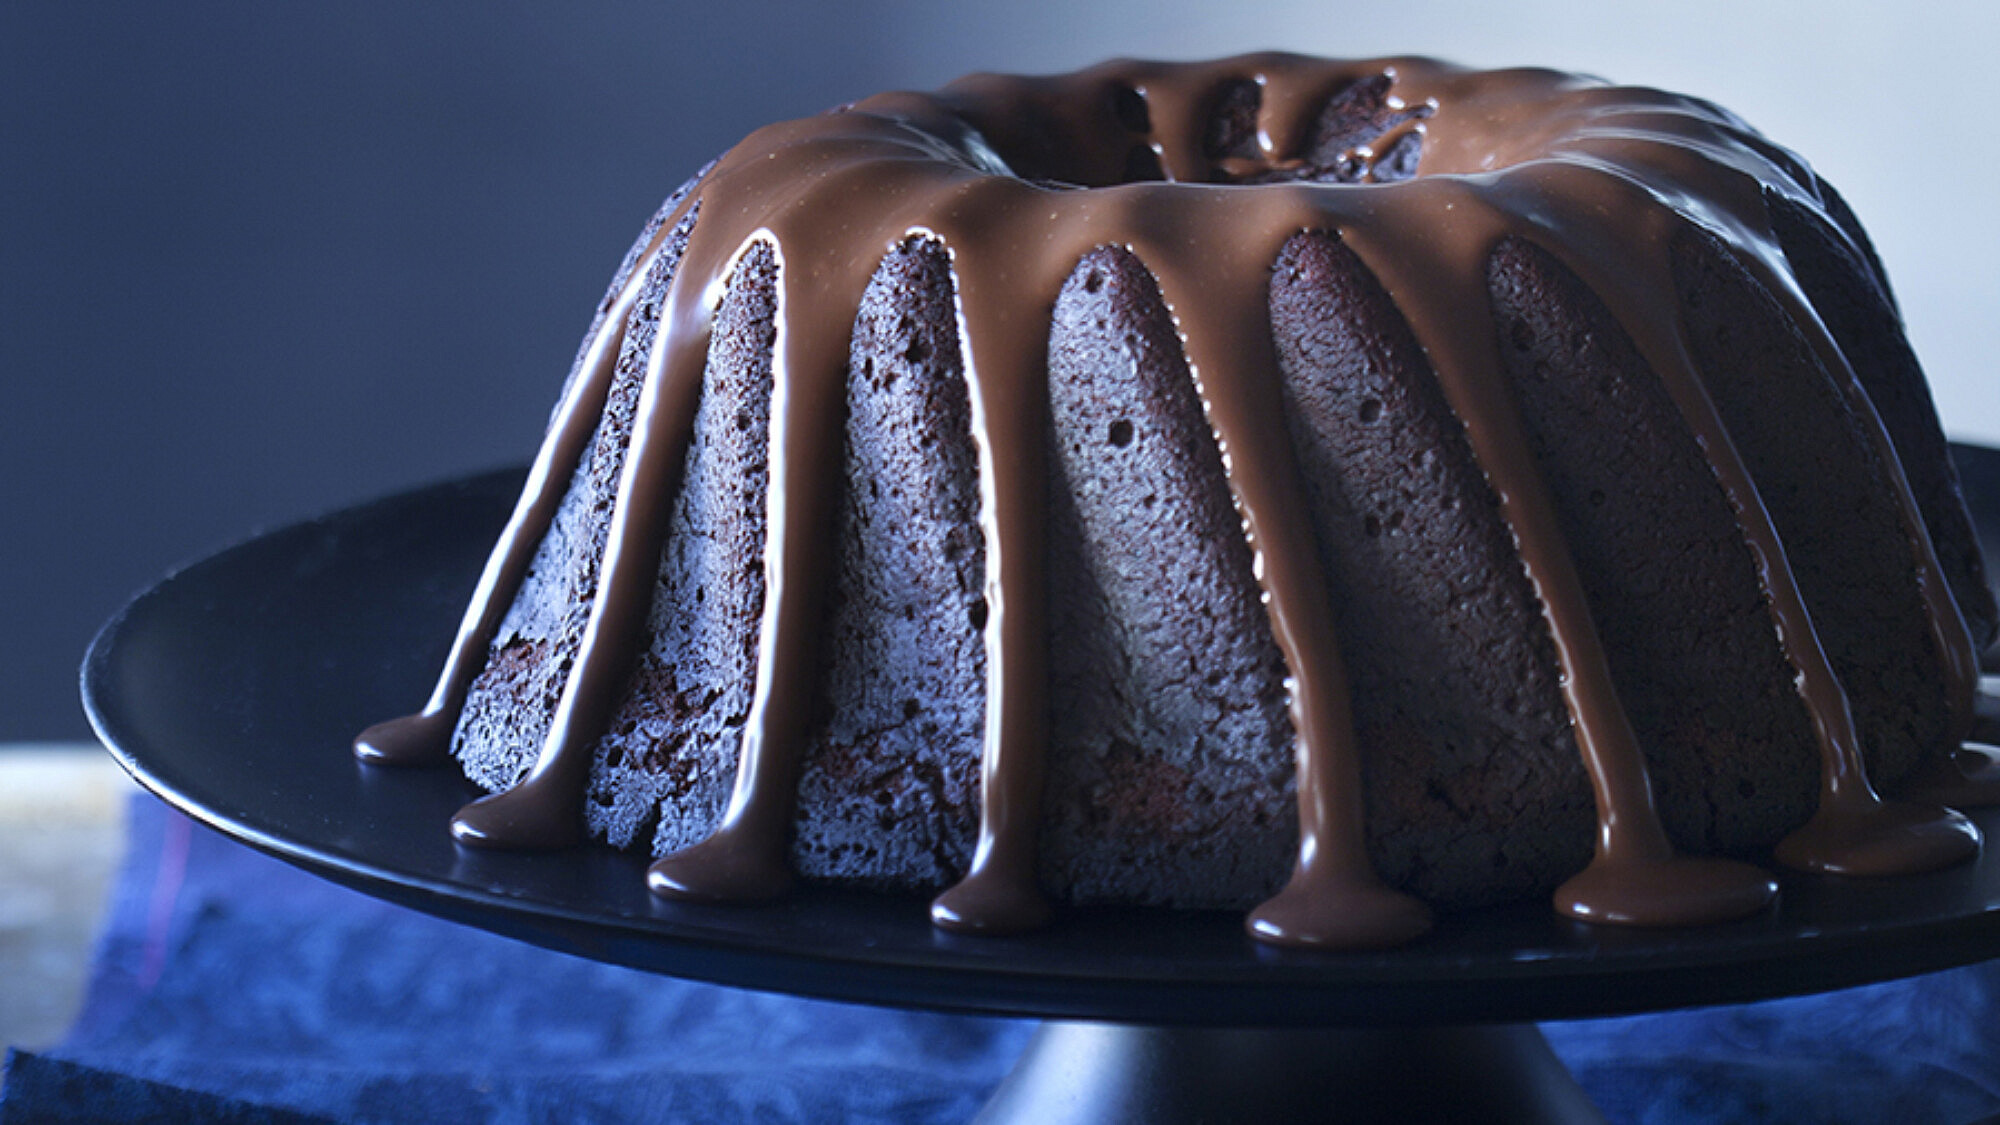 עוגת שוקולד עם שני פלפלים. צילום: דניאל לילה | סגנון: עמית פרבר